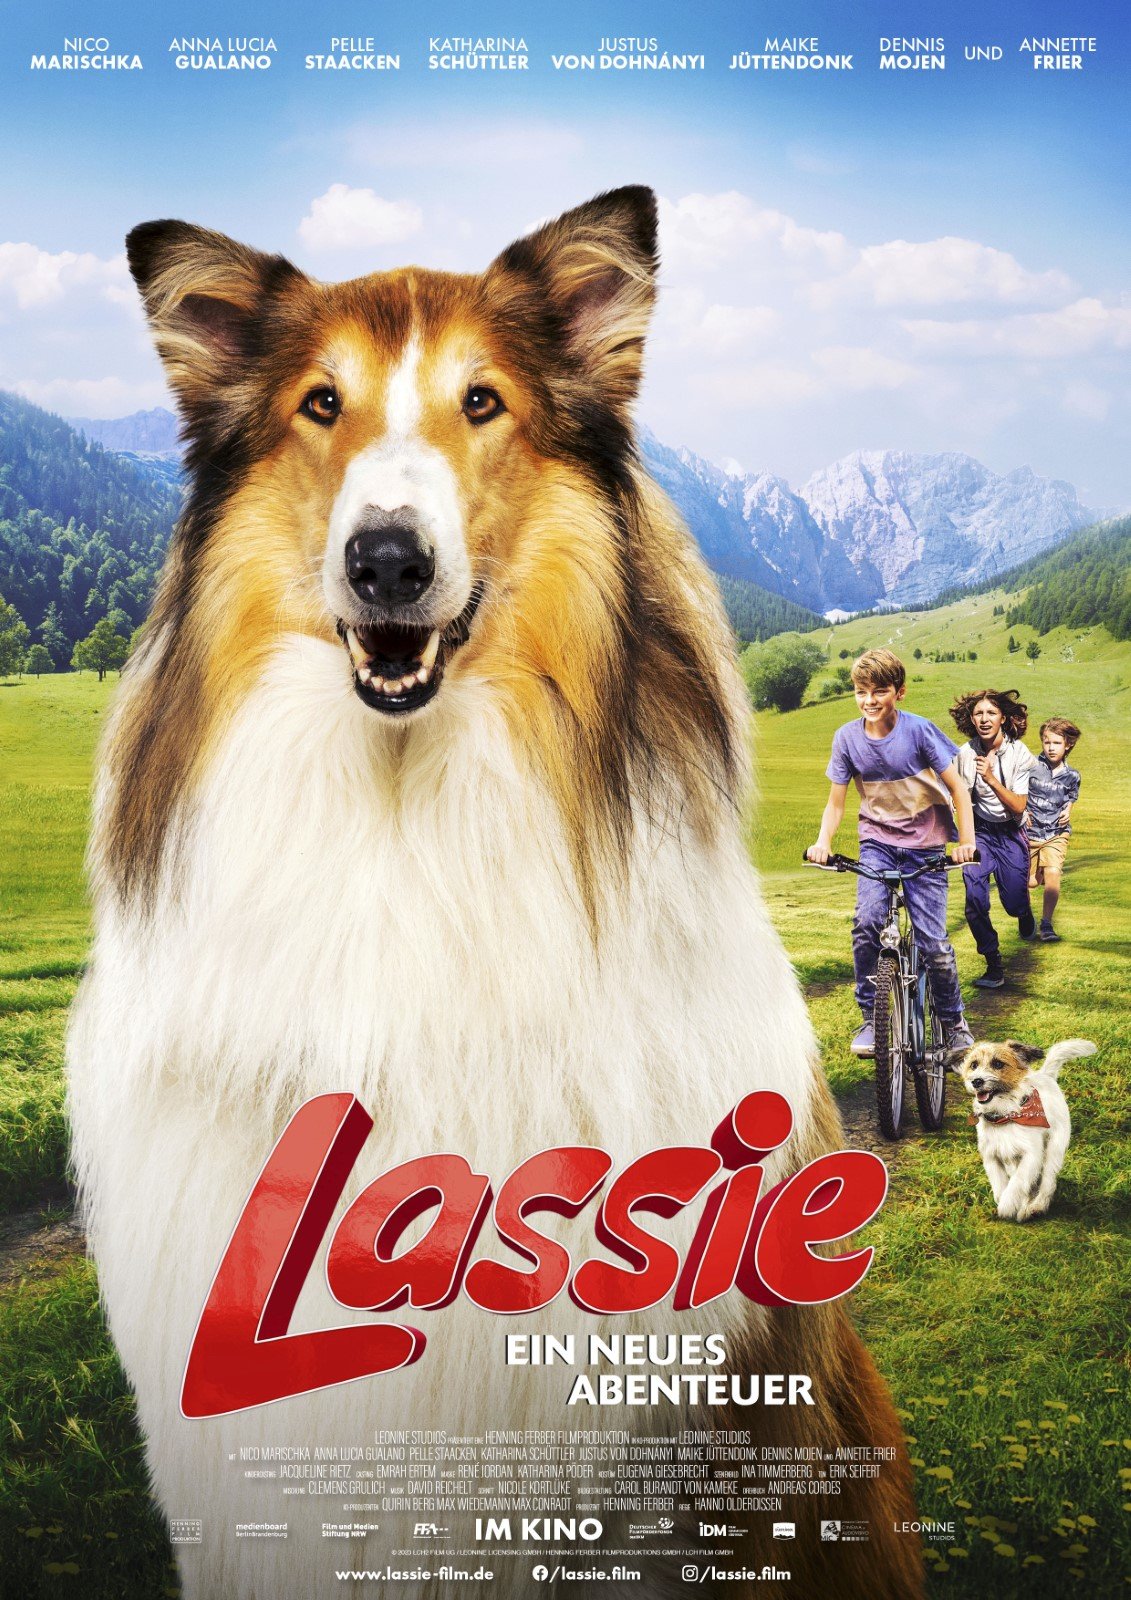 LASSIE A NEW ADVENTURE (Lassie - Ein neues Abenteuer)